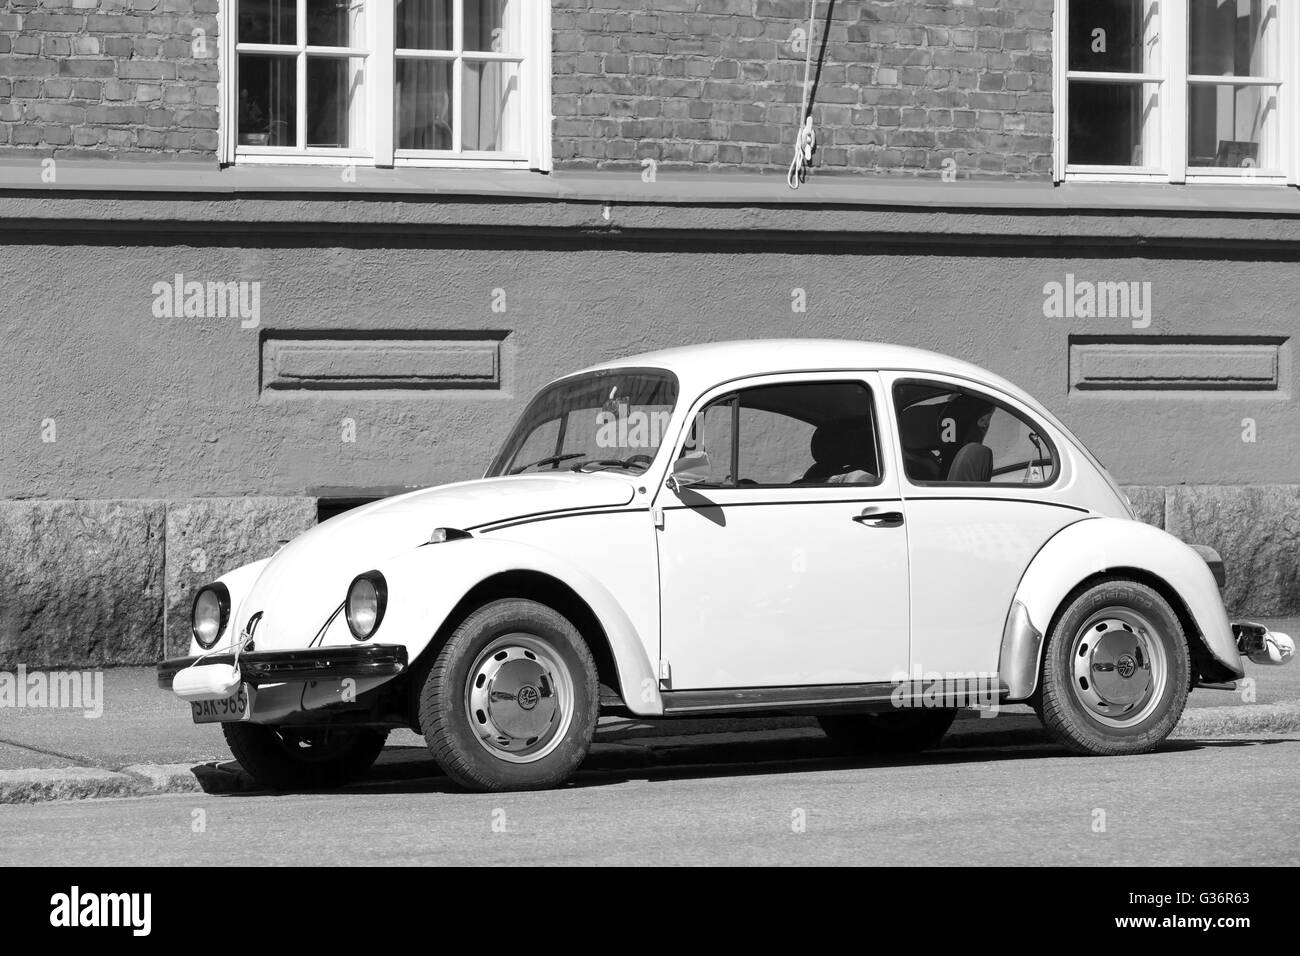 Helsinki, Finlande - le 7 mai 2016 : Volkswagen Beetle jaune est stationné sur l'accotement, noir et blanc Banque D'Images